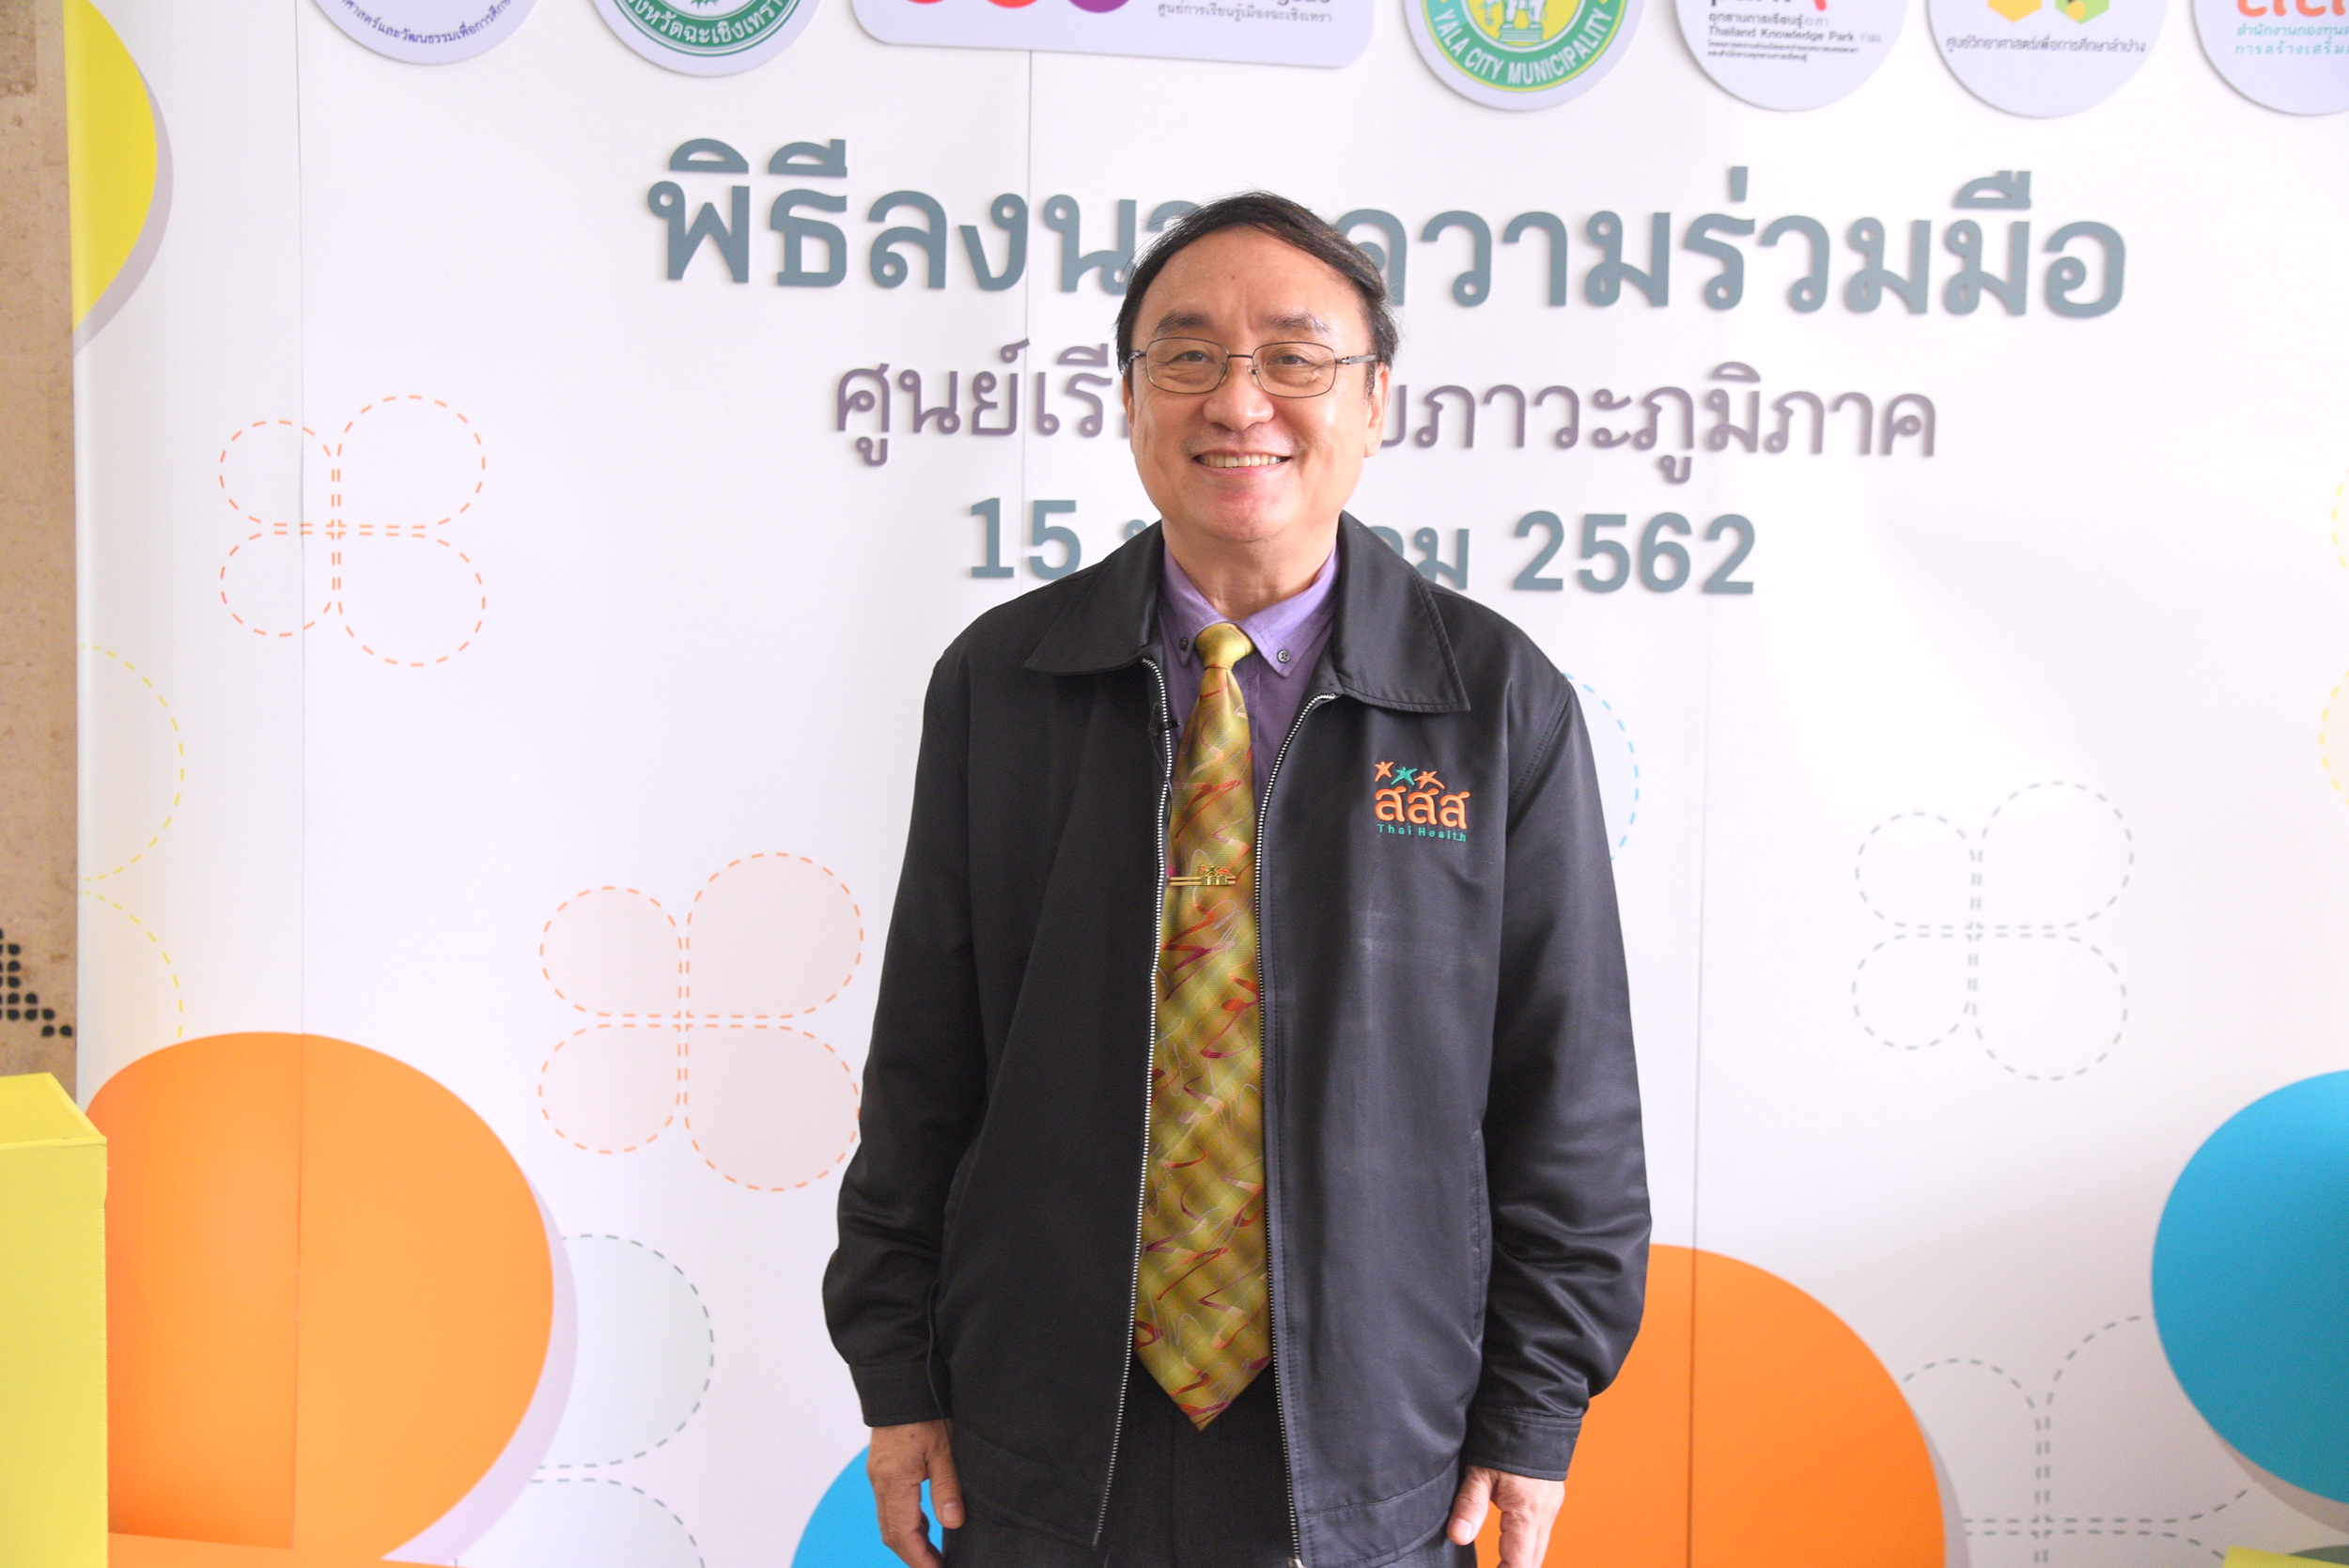 สสส.และภาคีขยายศูย์การสื่อสารสุขภาพสู่ภูมิภาคระยะที่สอง  thaihealth